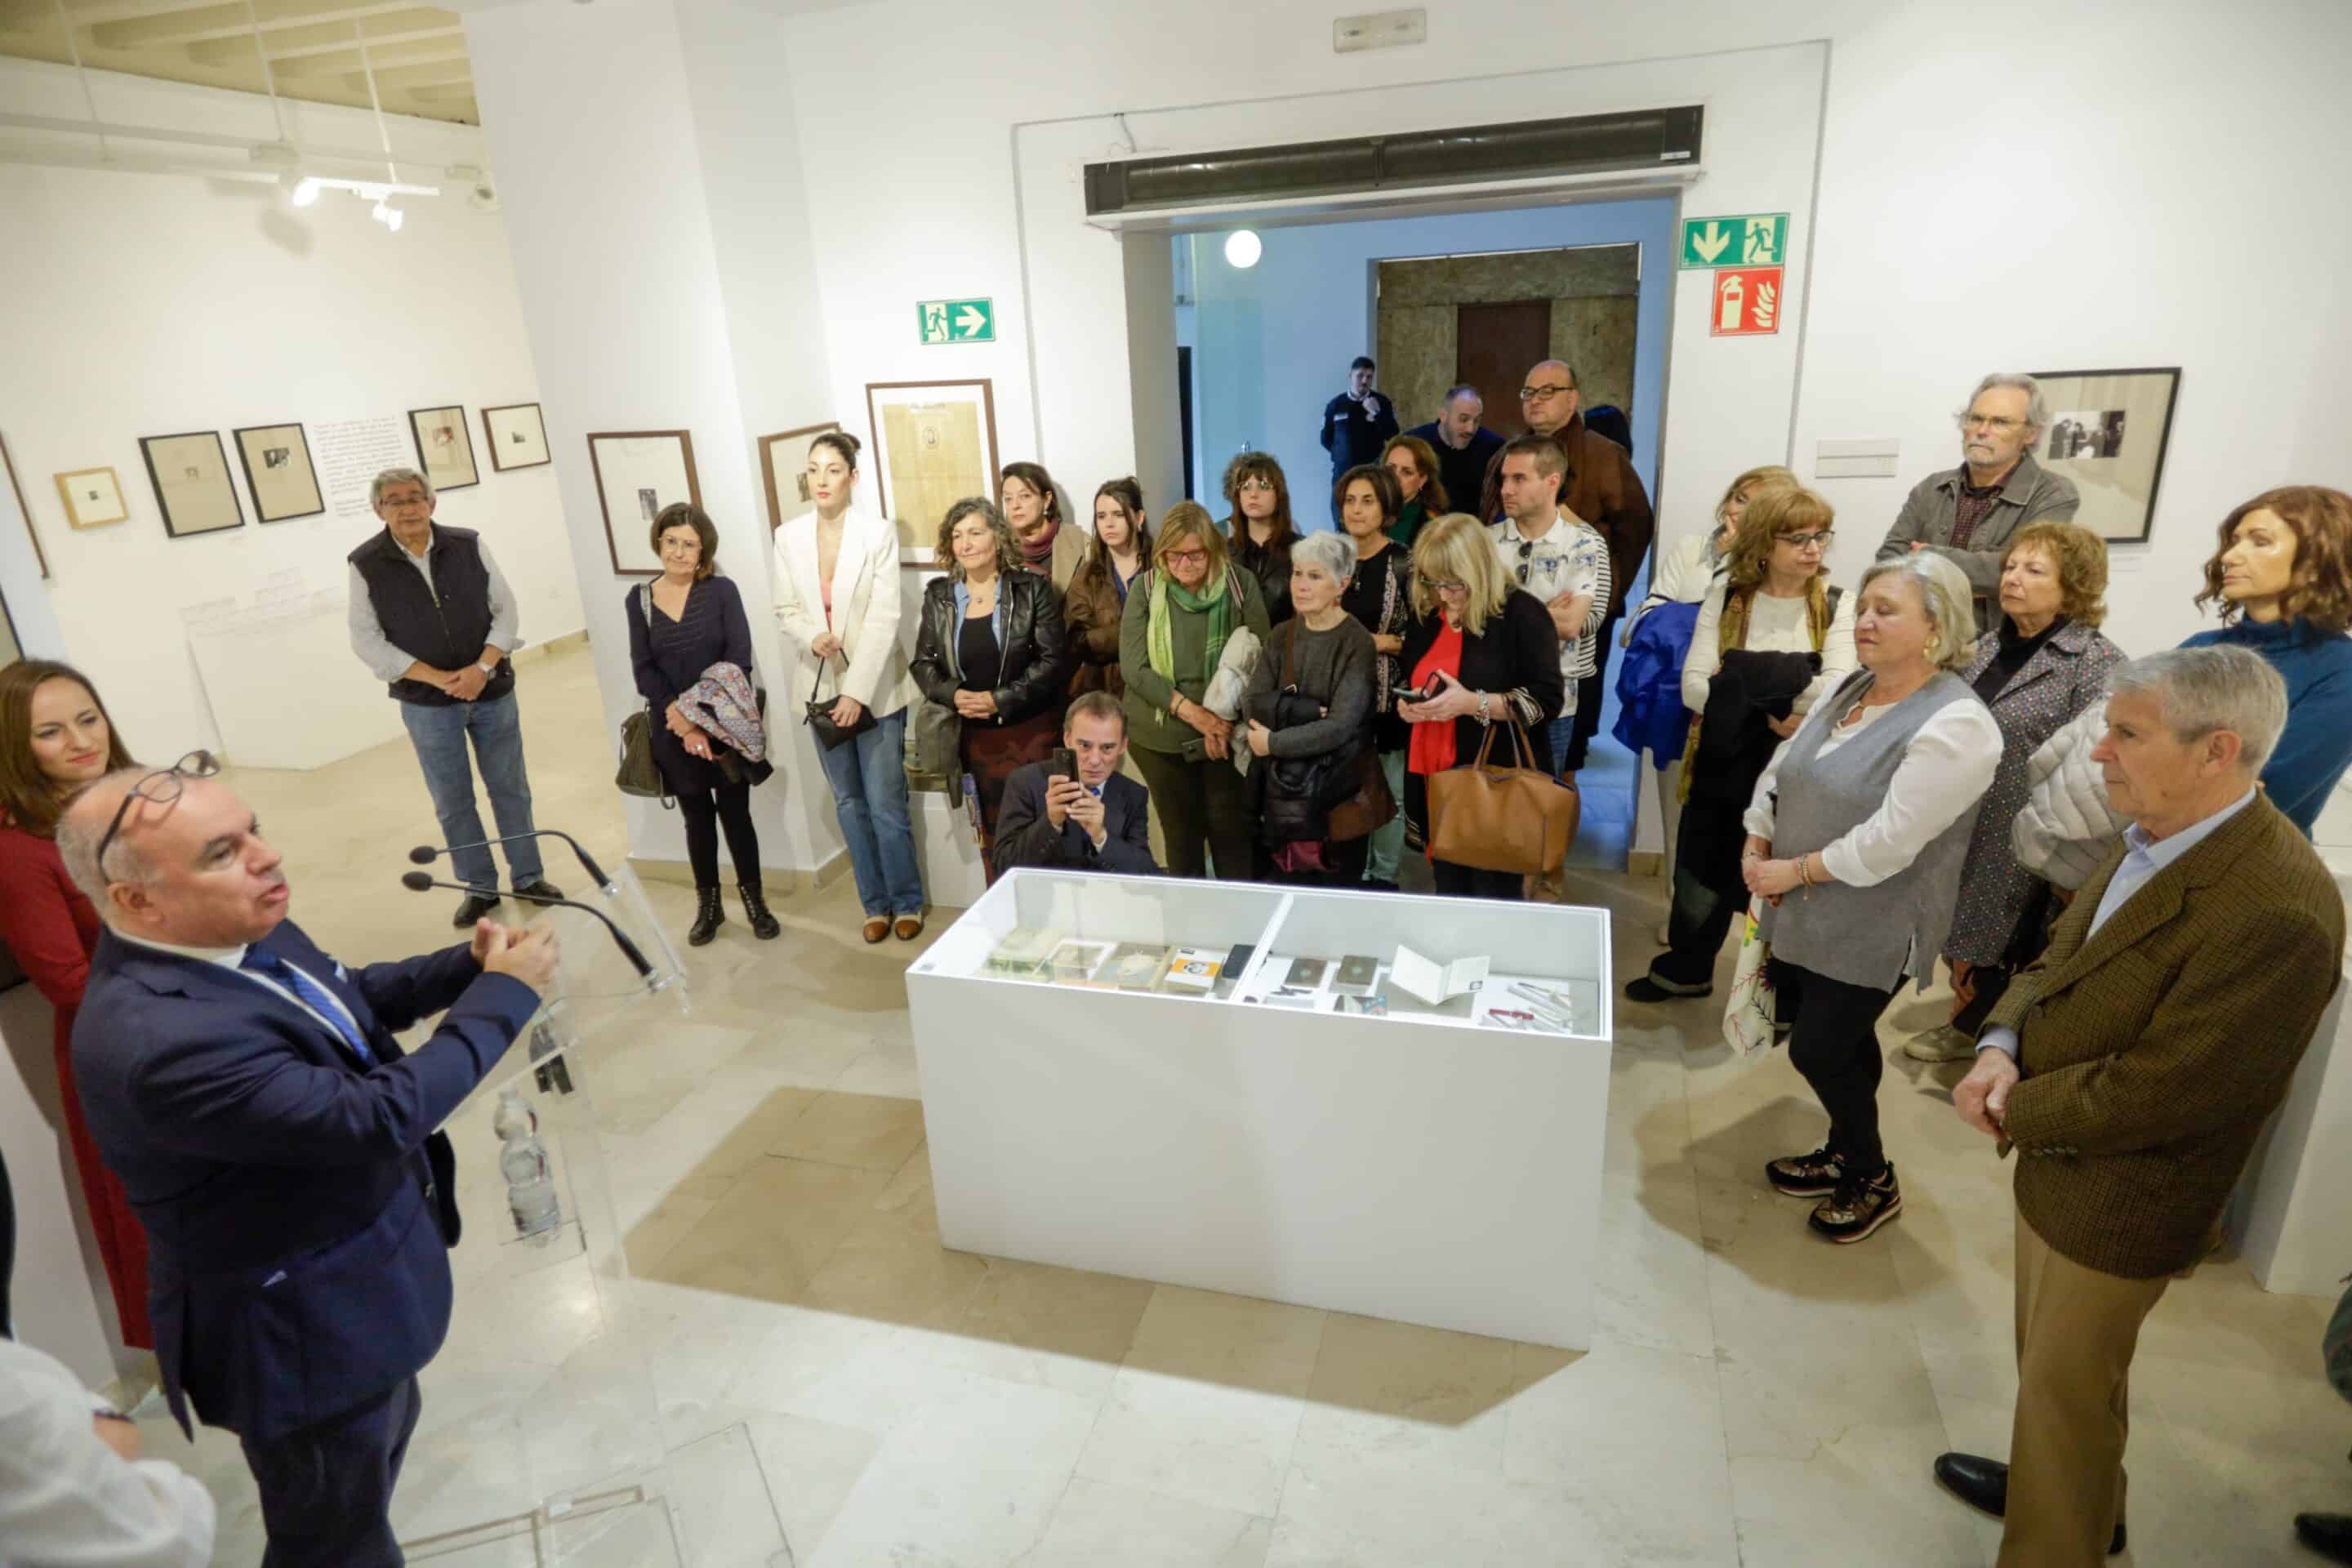 Exposición “Escrito por mujeres. Escritoras del Siglo XX en español”, en Cádiz